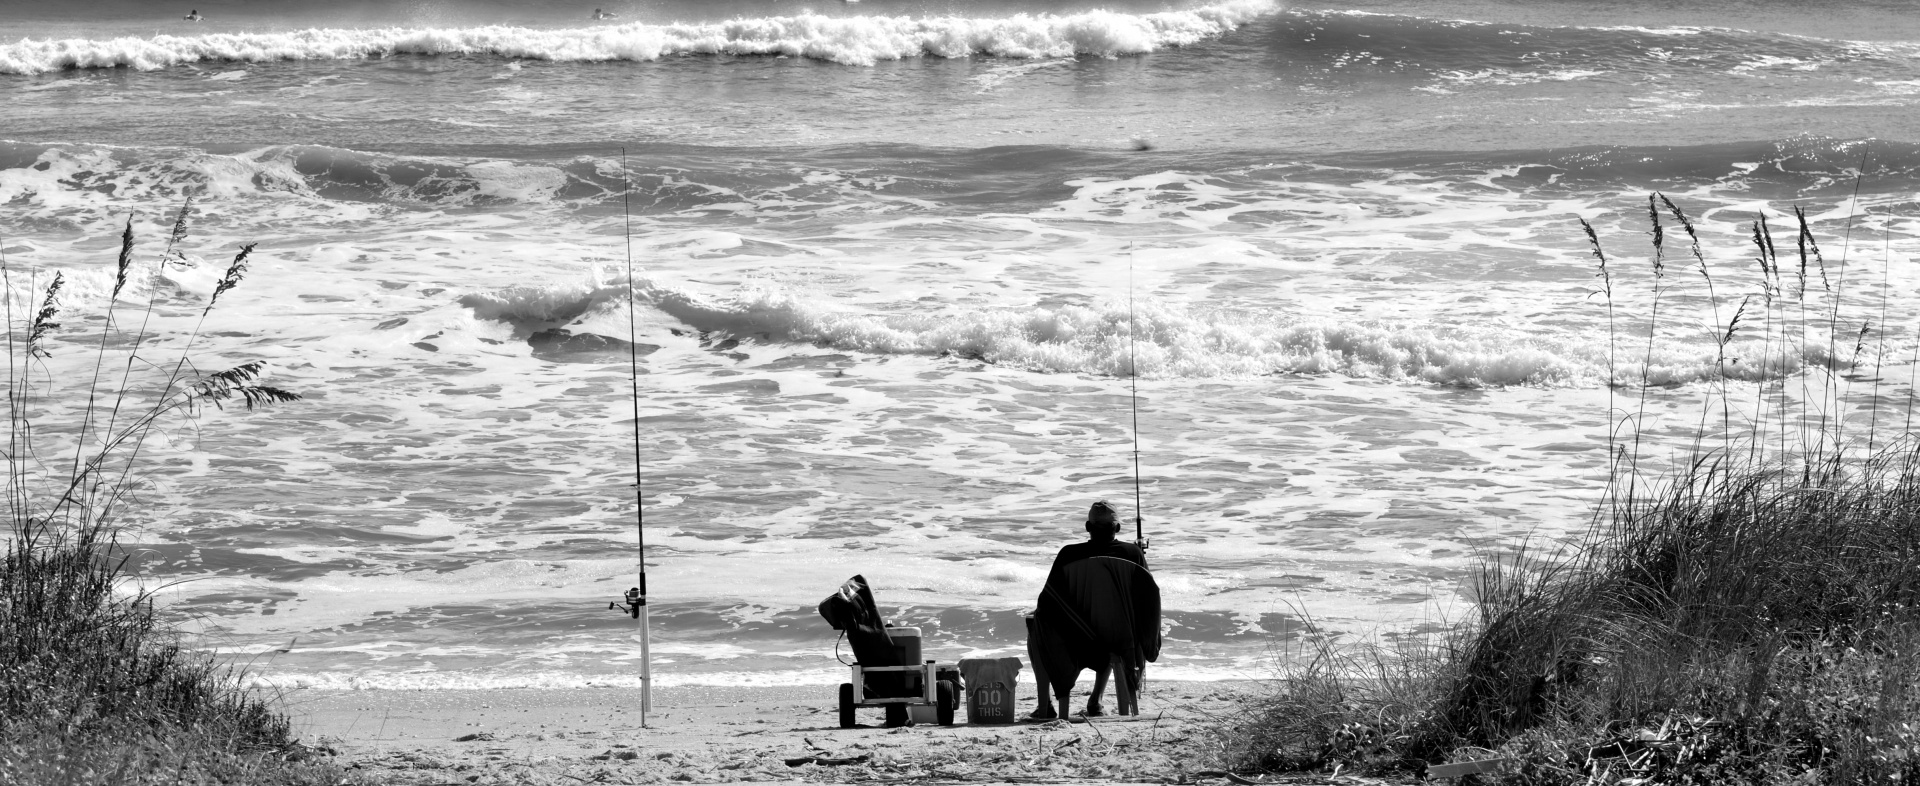 surf fisherman fishing ocean free photo